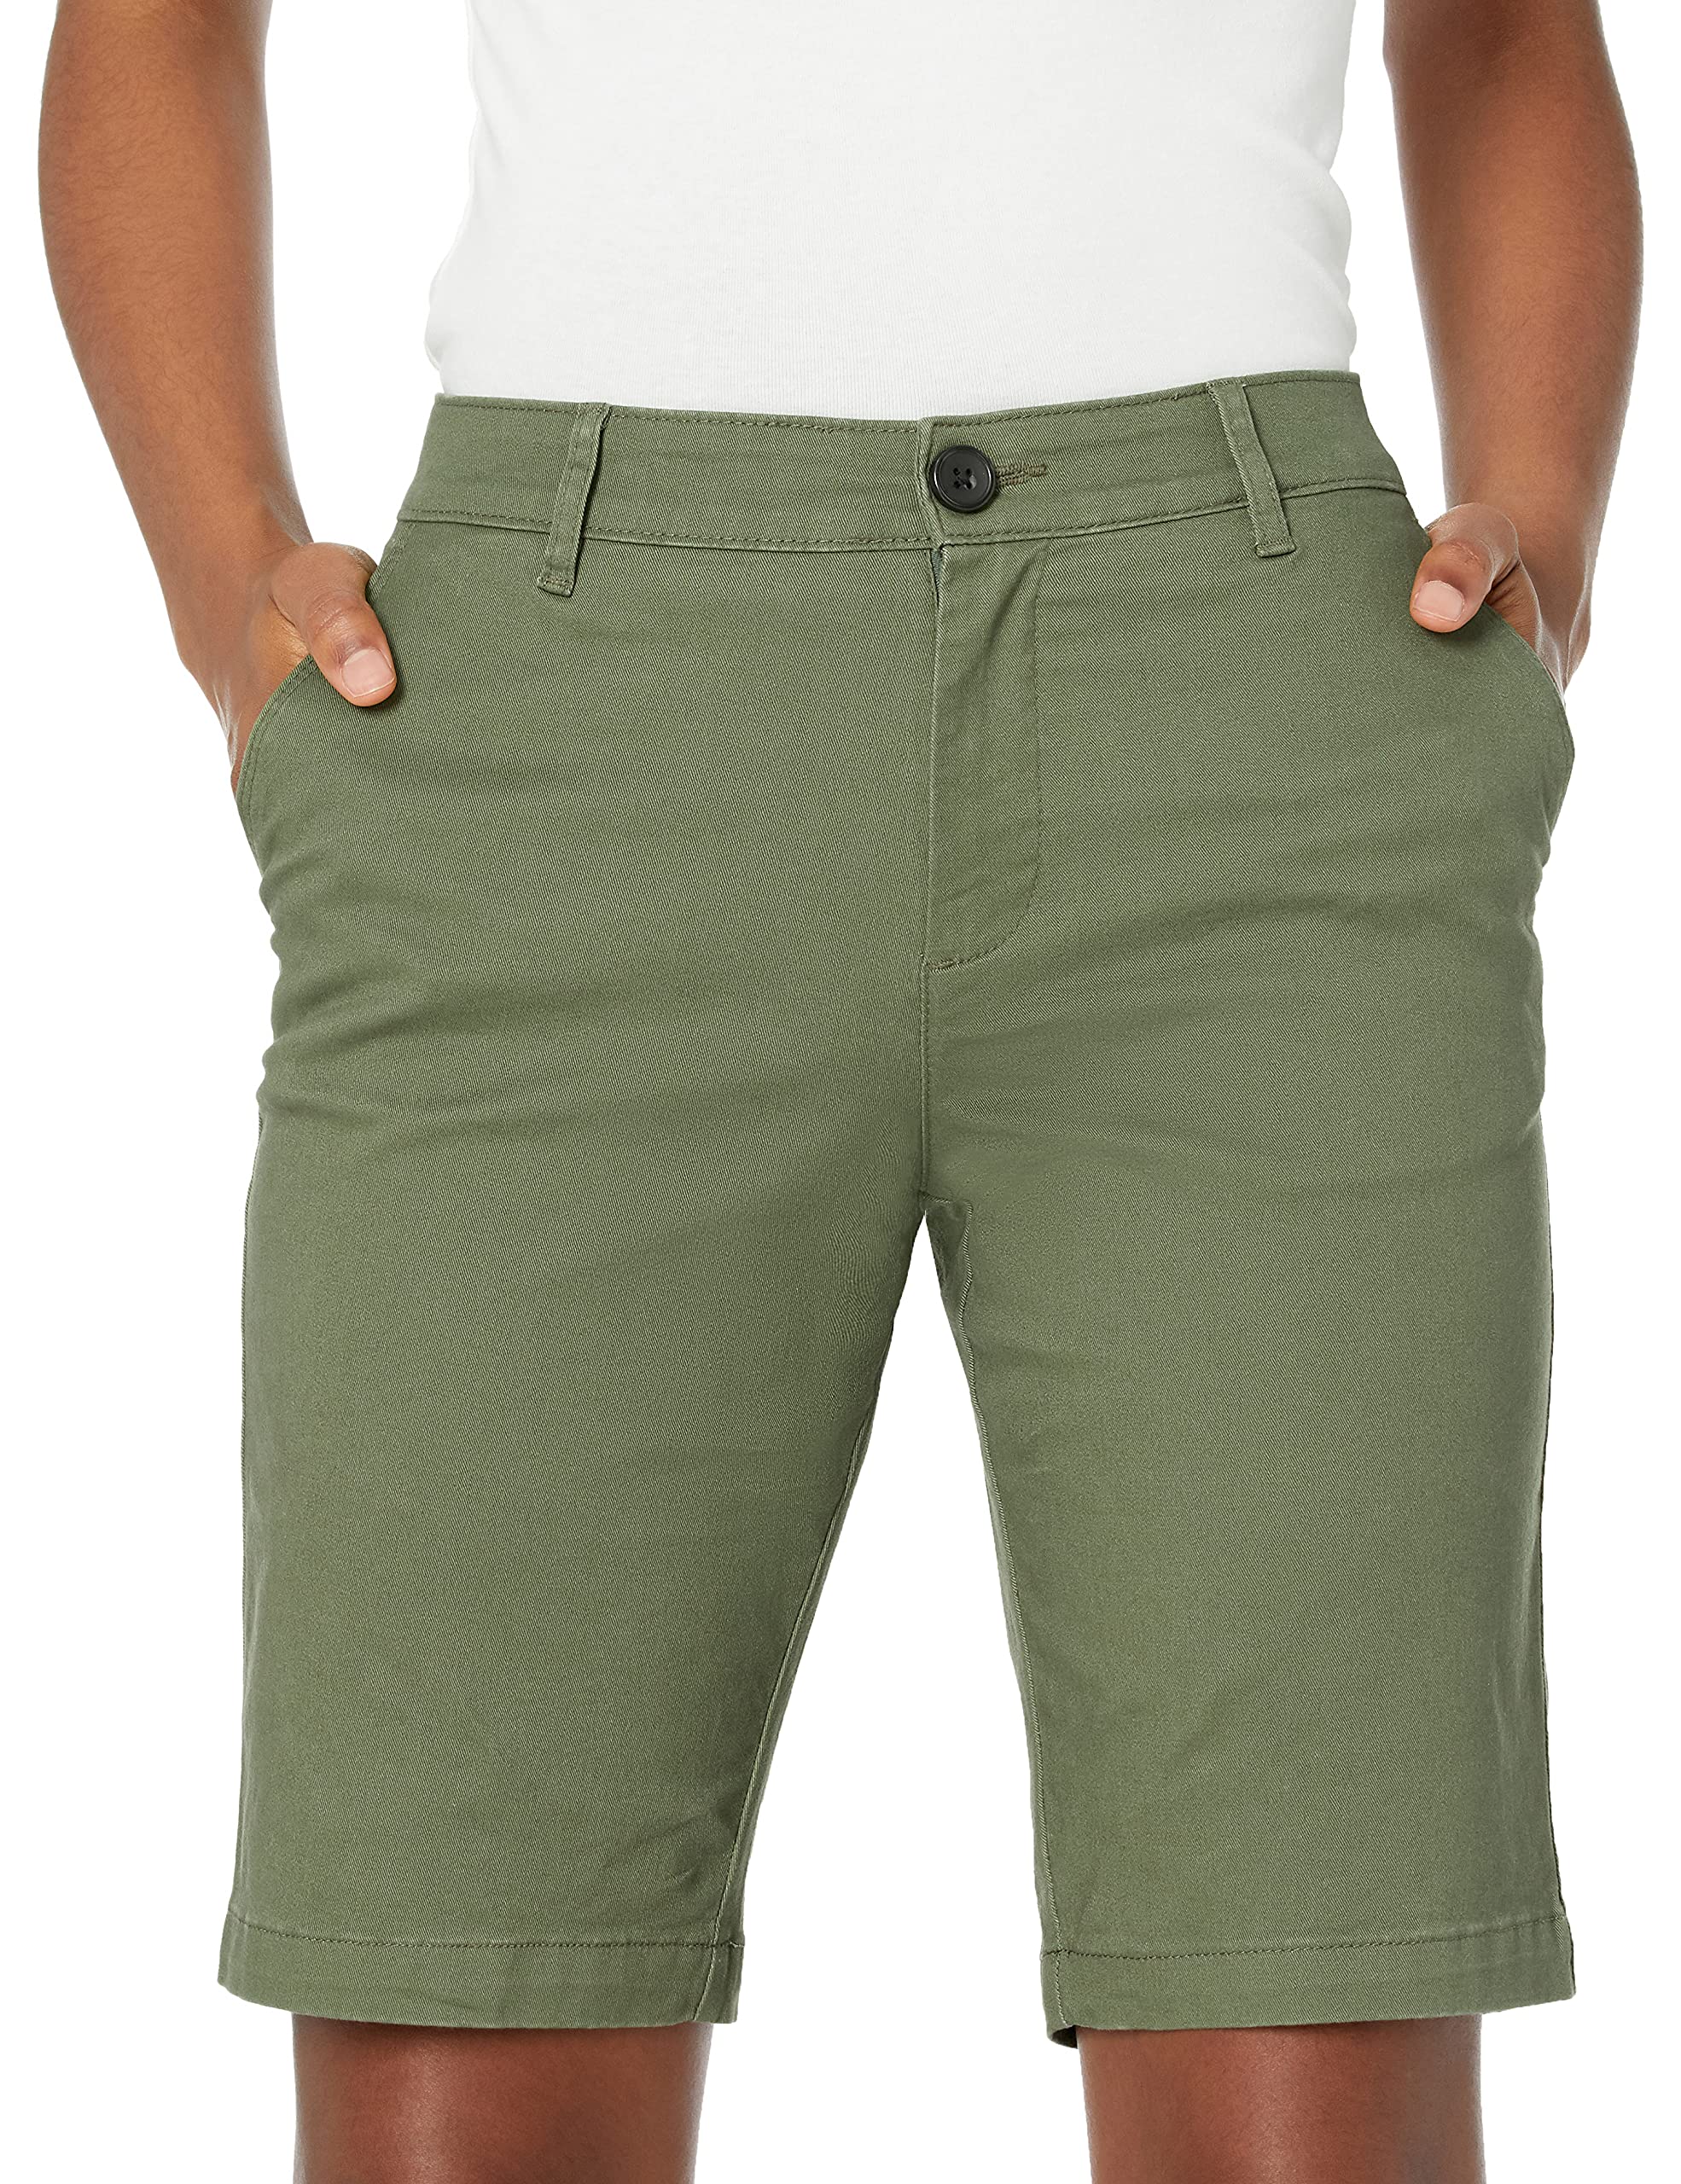 Amazon Essentials Women's Mid-Rise Slim-Fit 10 Inch Inseam Bermuda Khaki Short